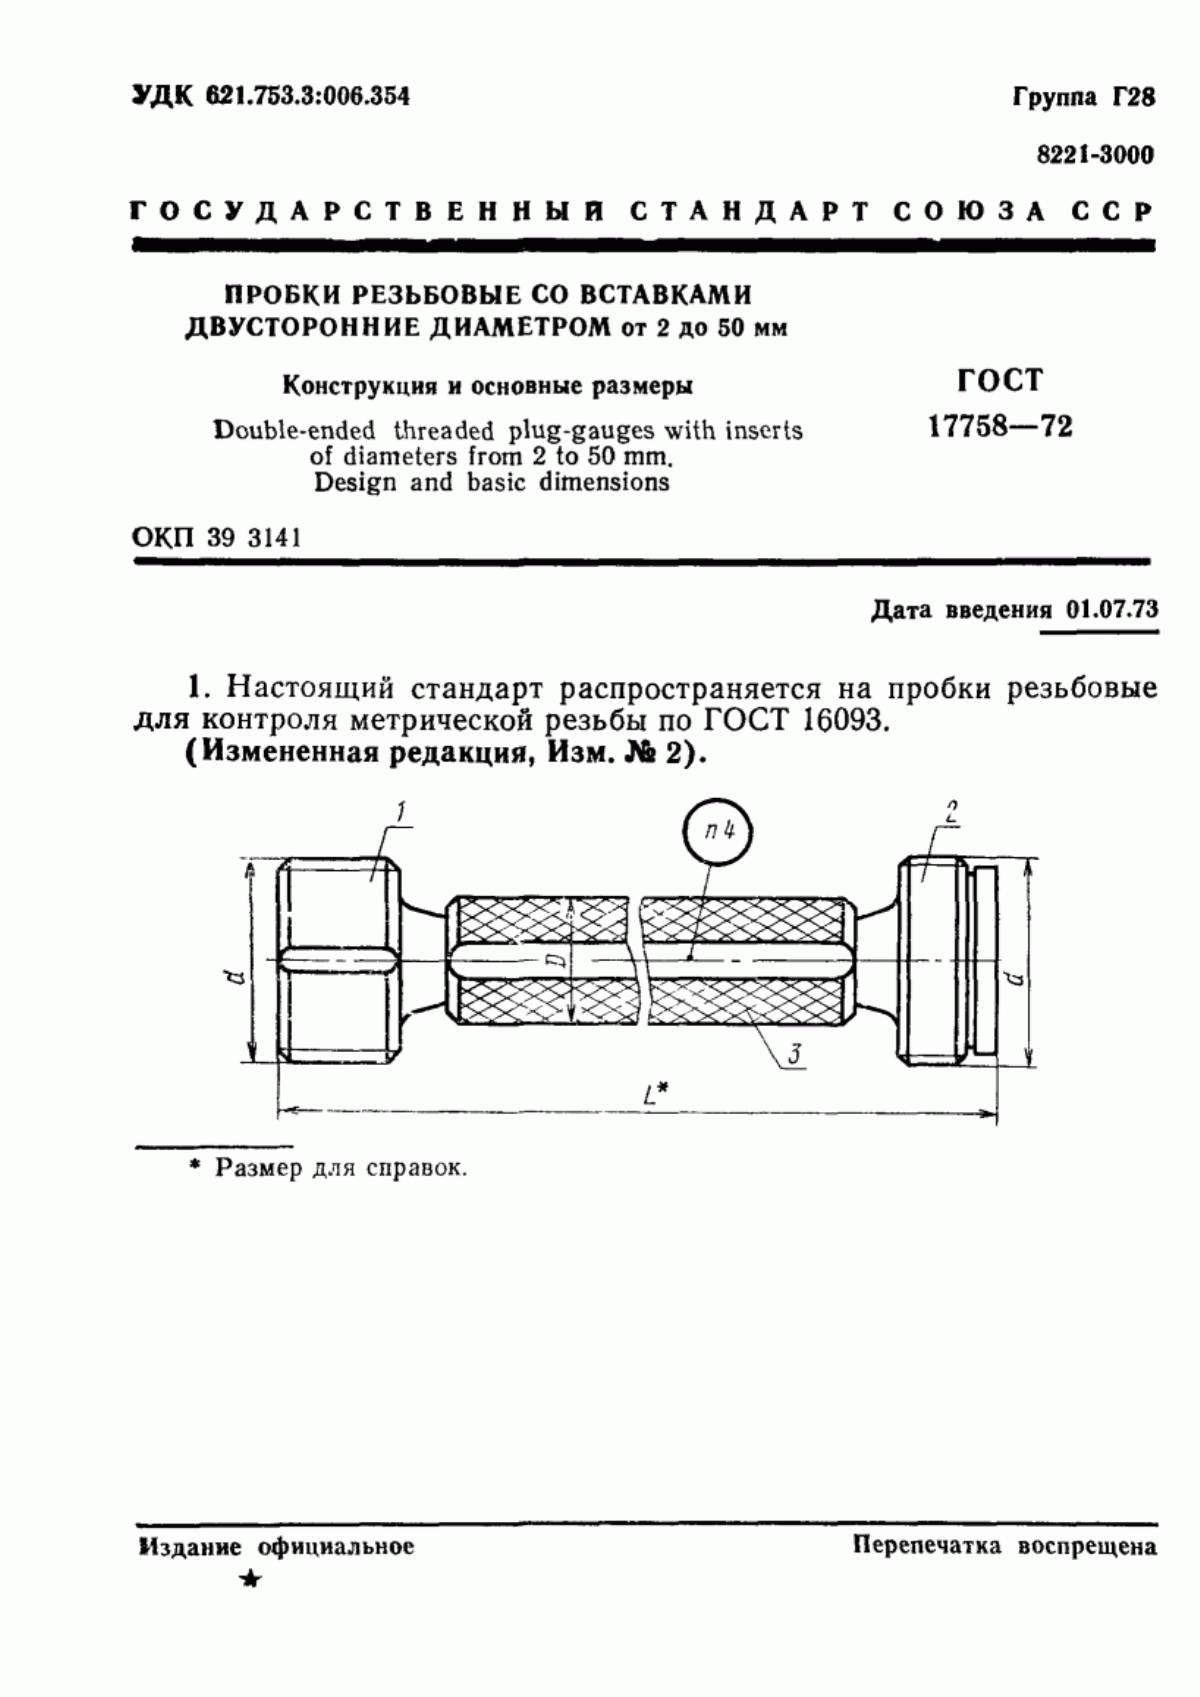 ГОСТ 17758-72 Пробки резьбовые со вставками двусторонние диаметром от 2 до 50 мм. Конструкция и основные размеры